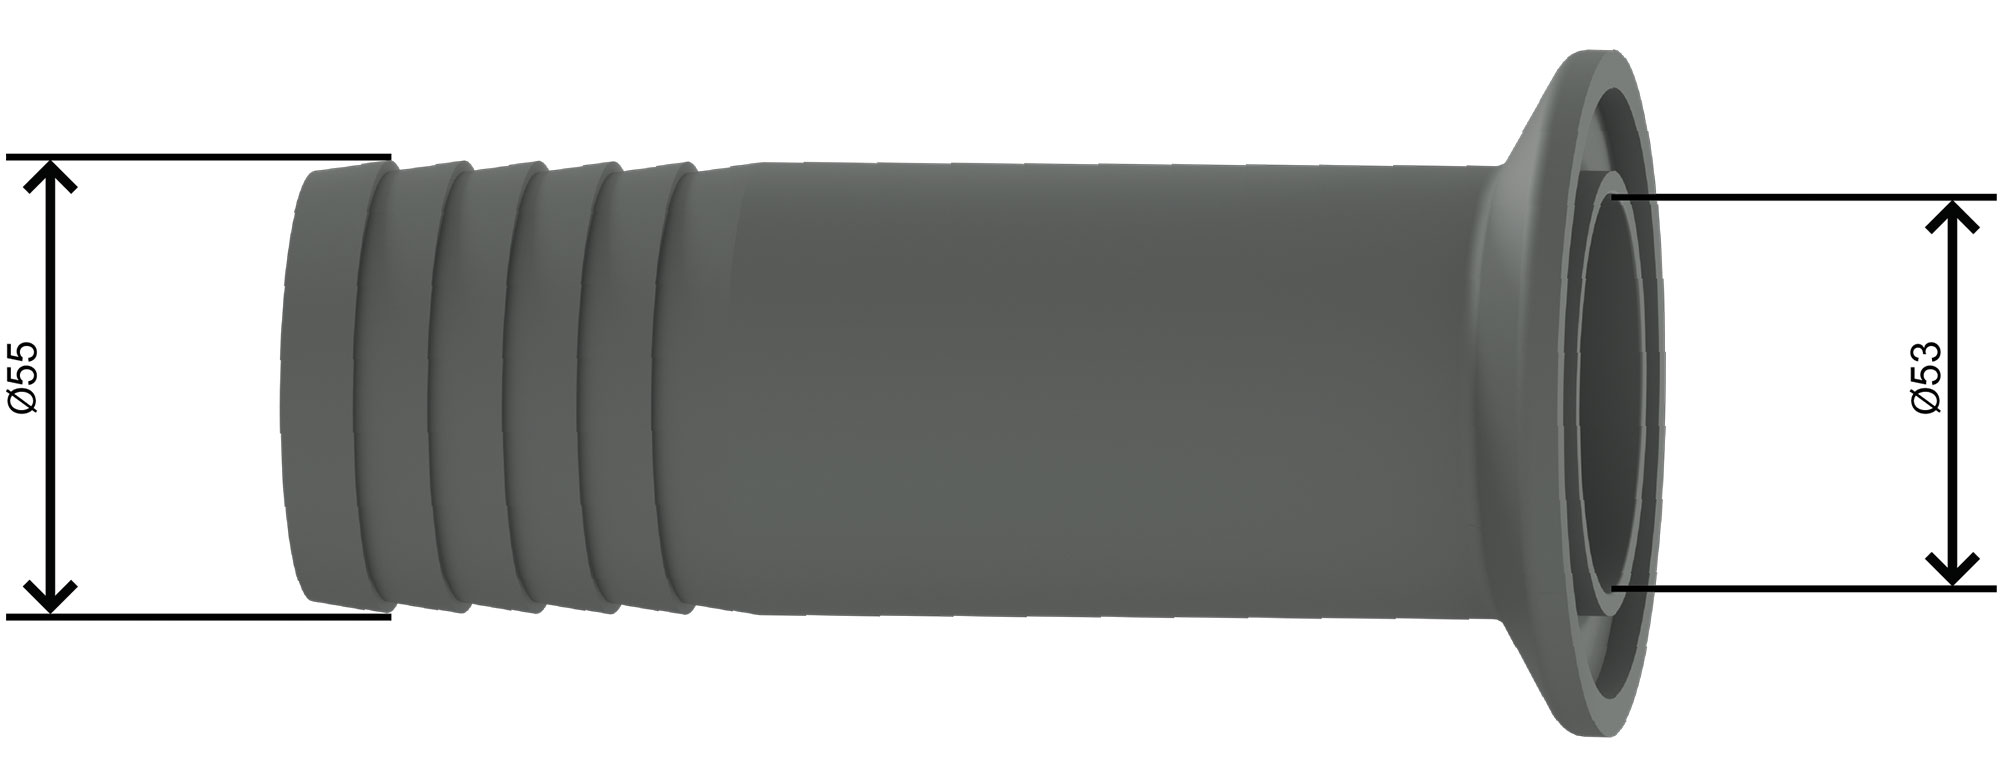 Штуцер для шланга 2, Ду50 Ру1.6, 2.5, 4.0 МПа для БРС с шарнирным хомутом